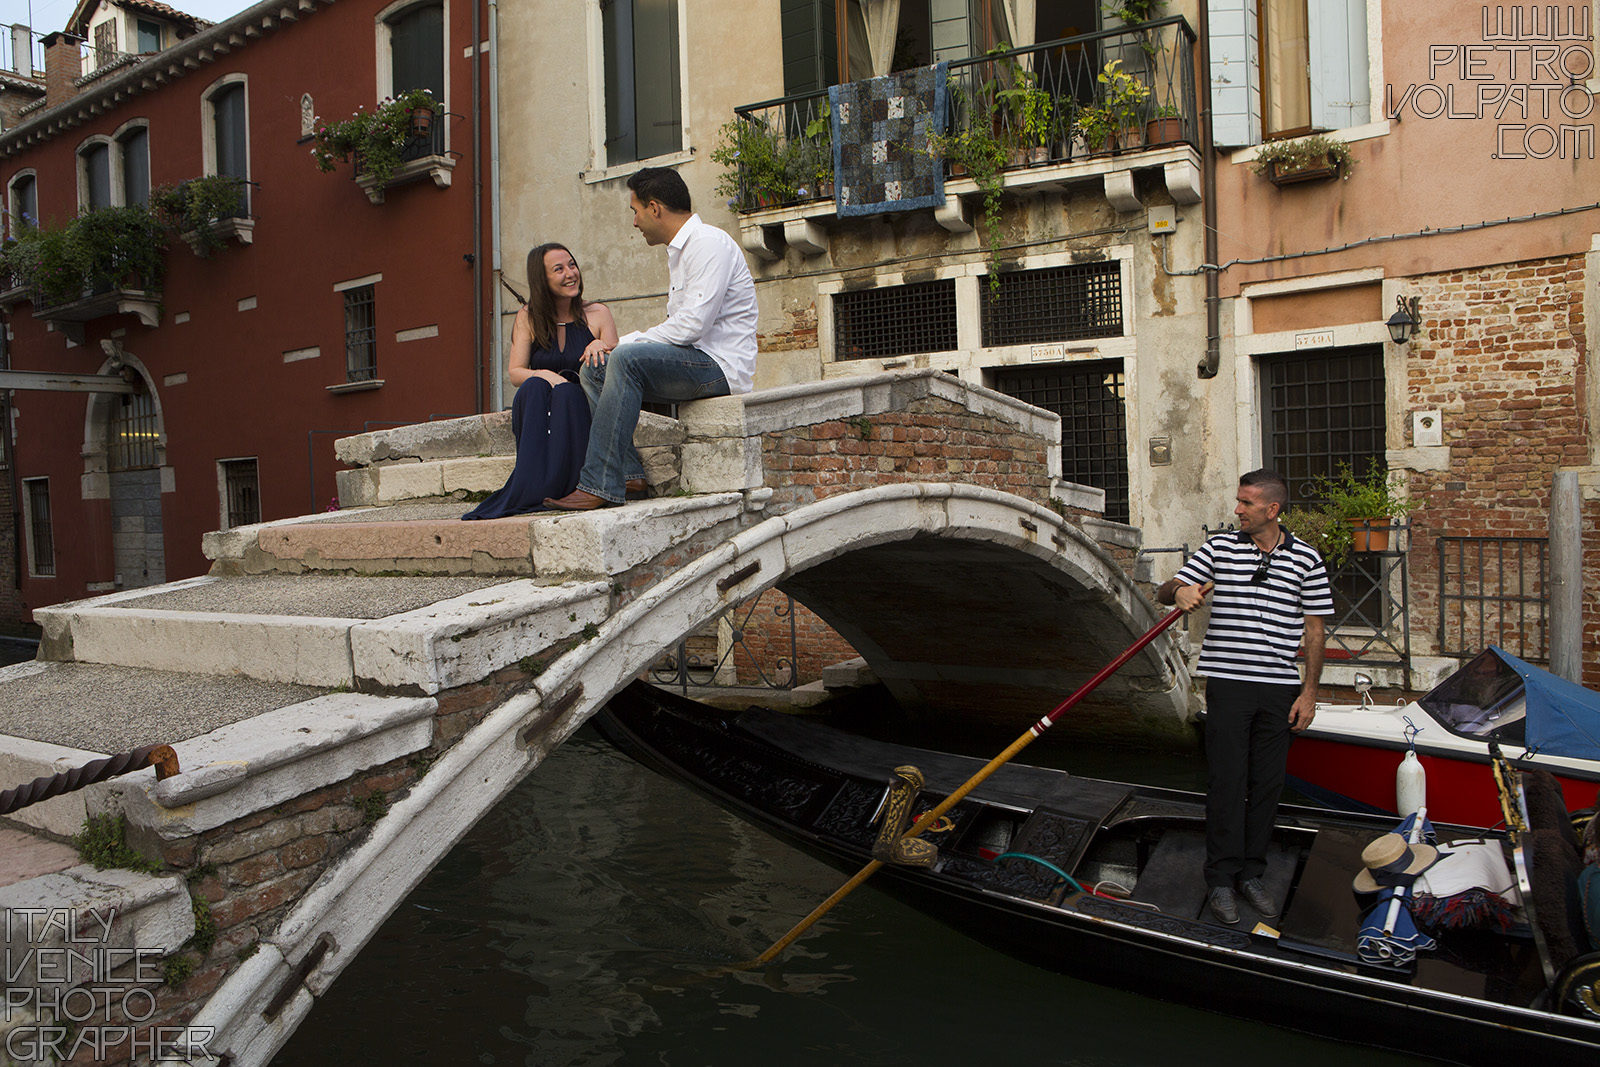 Fotografo a Venezia per servizio fotografico vacanza romantica coppia ~ Foto scattate durante passeggiata romantica e giro in gondola